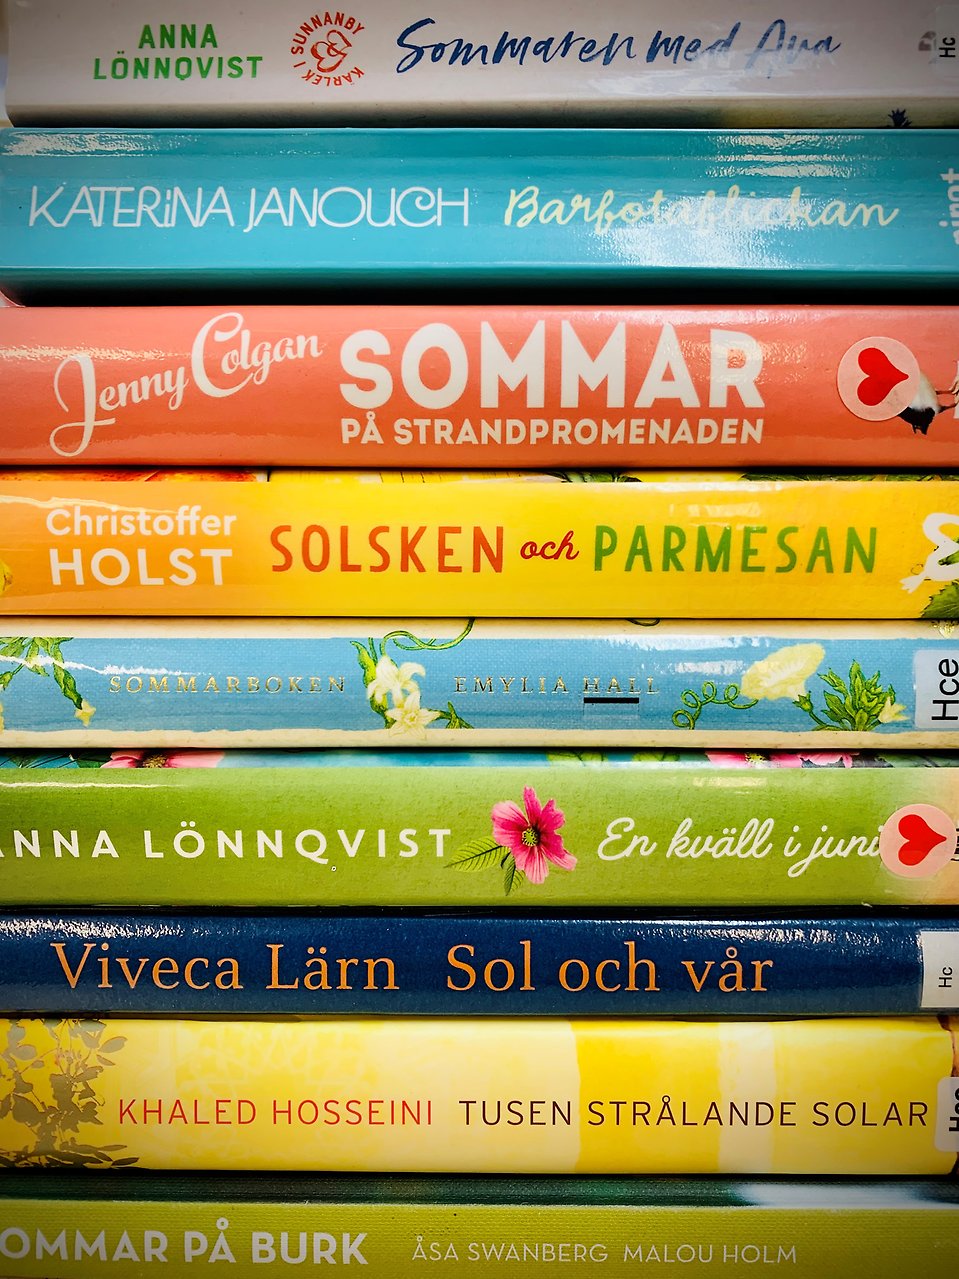 Bokhög där enbart ryggarna syns. Titlar som handlar om sommaren. Exempel på titlar: "Solsken och parmesan", "En kväll i juni", "Sol och vår", "Sommar på strandpromenaden". 